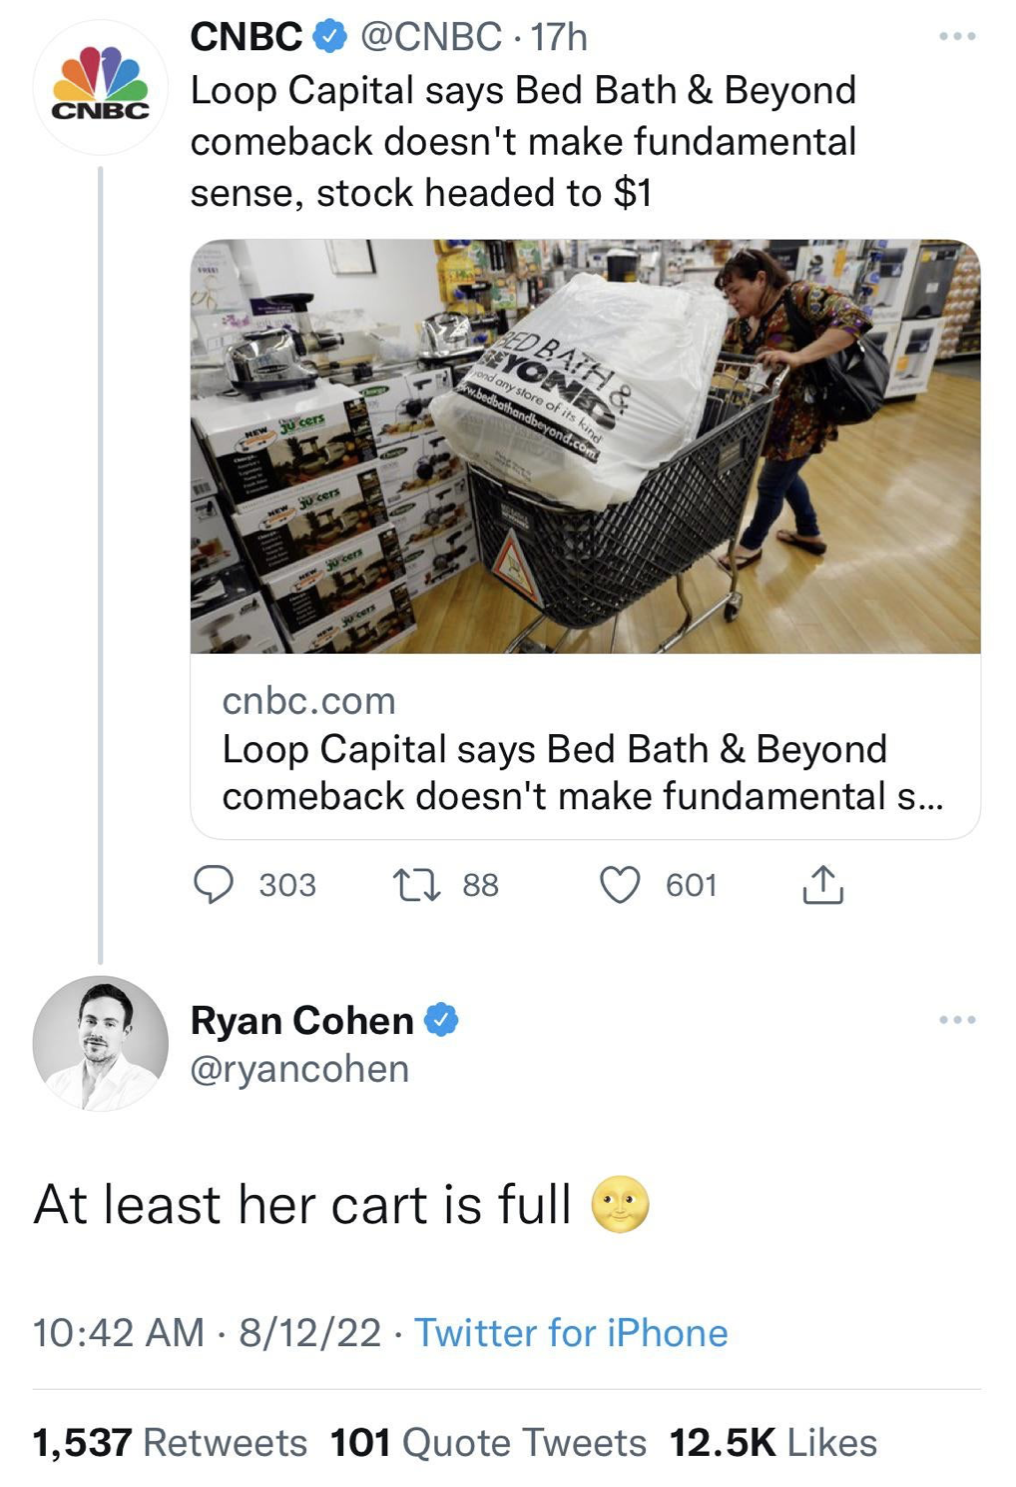 Ryan Cohen